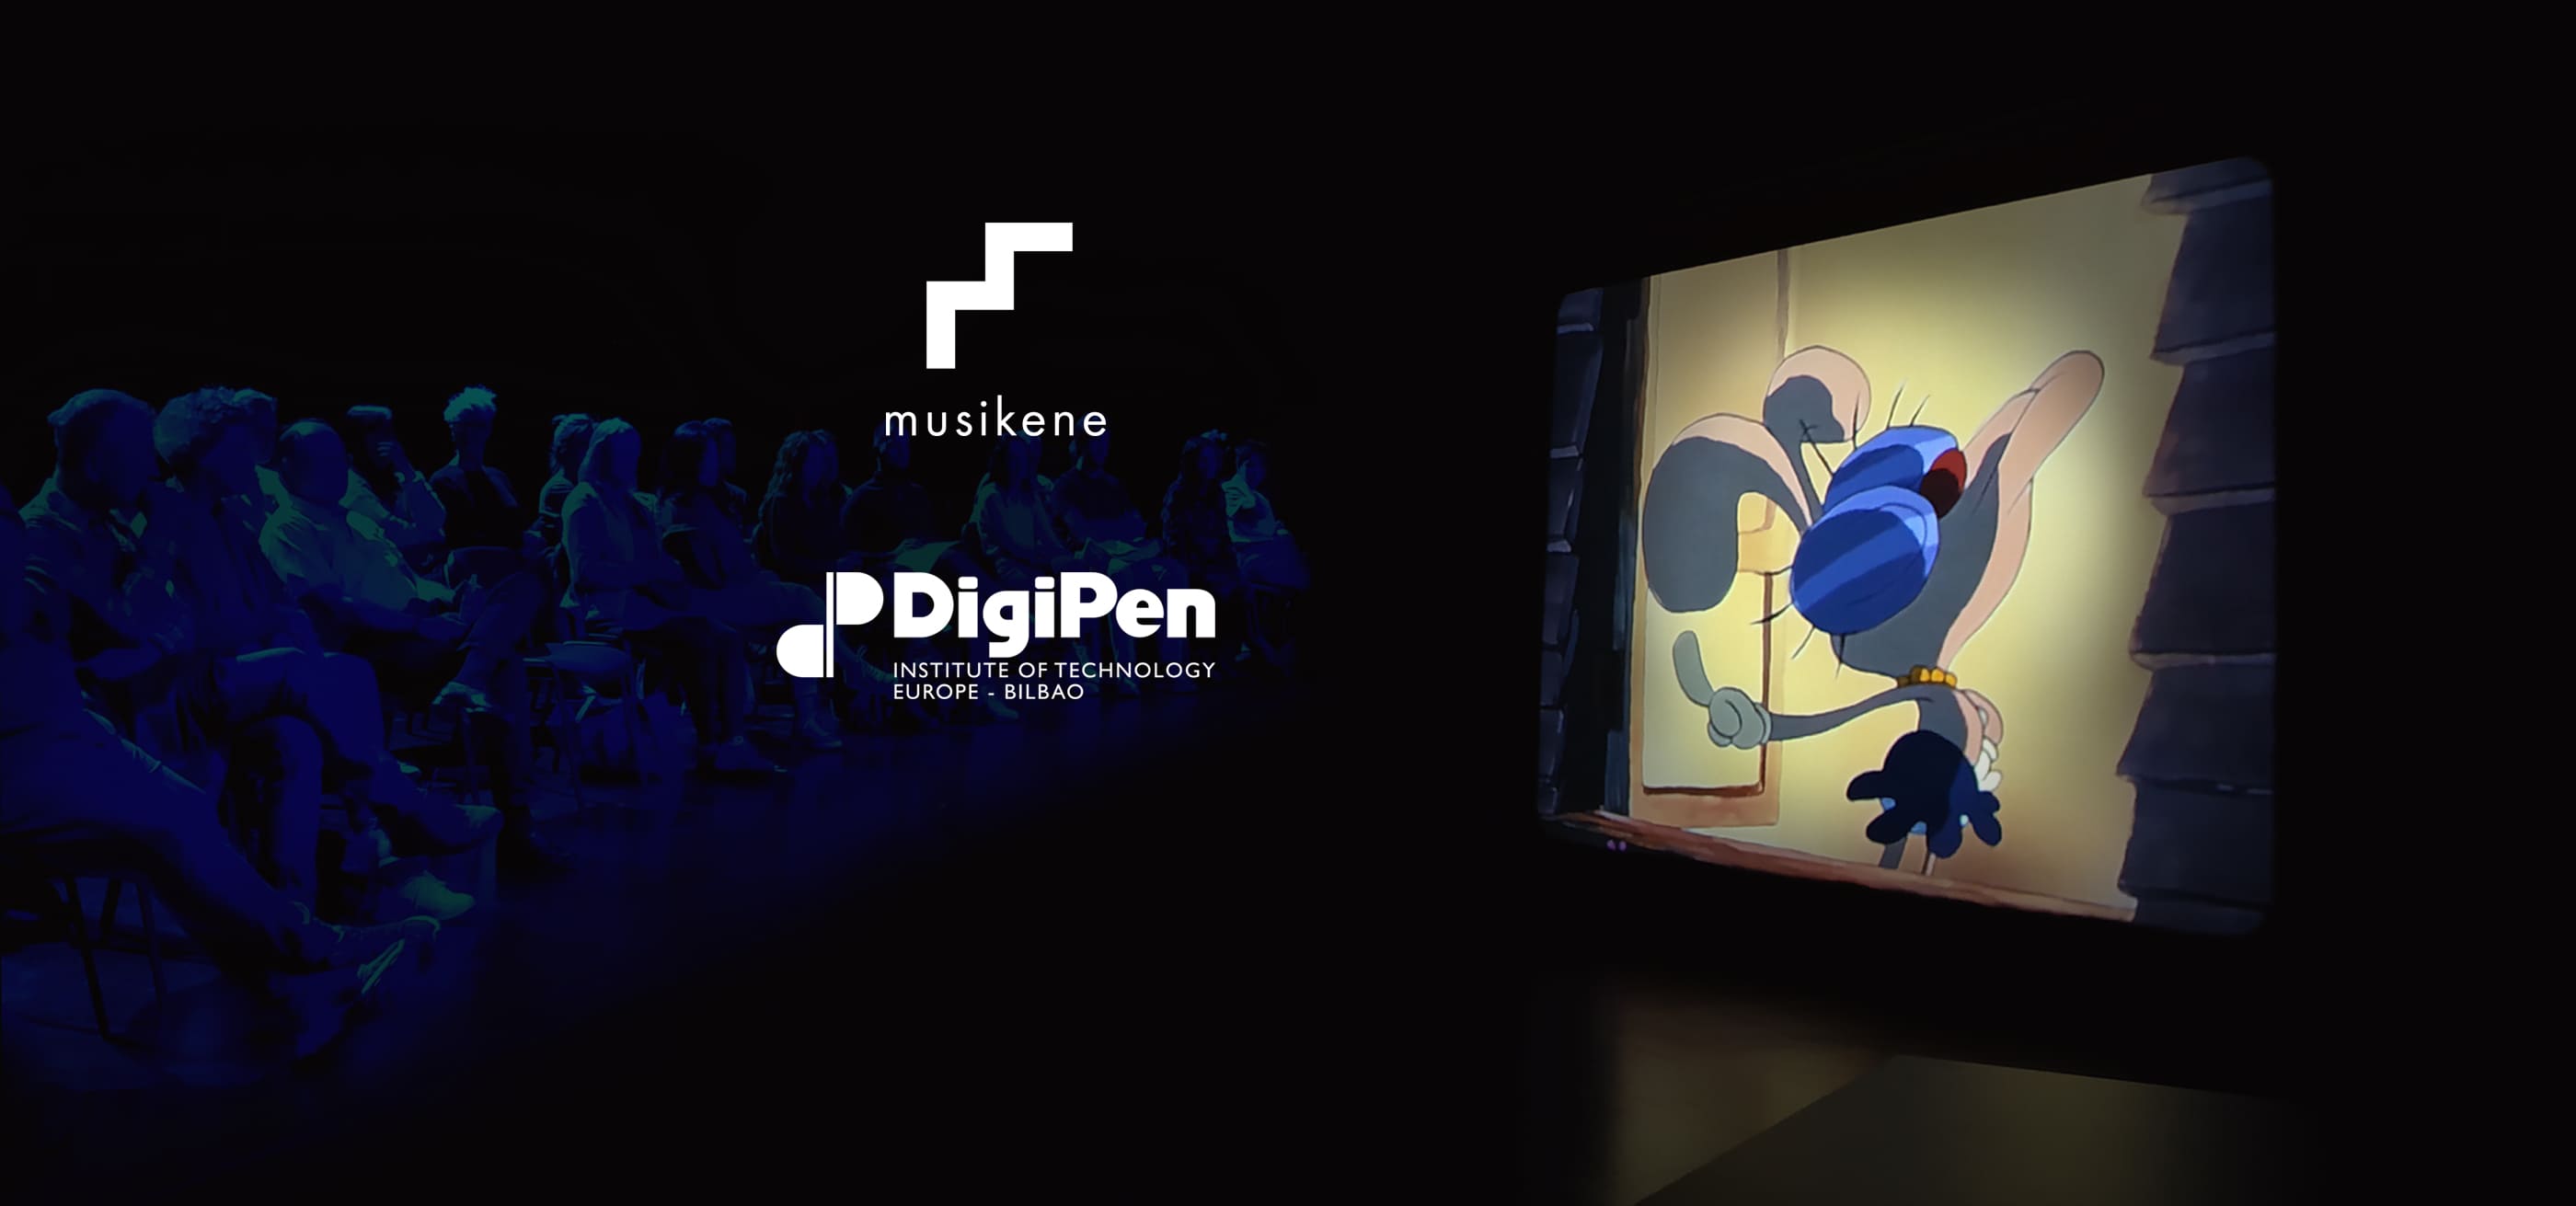  Una captura de un personaje en una caricatura animada con los logotipos de DigiPen y Musikene ubicados a su lado izquierdo.